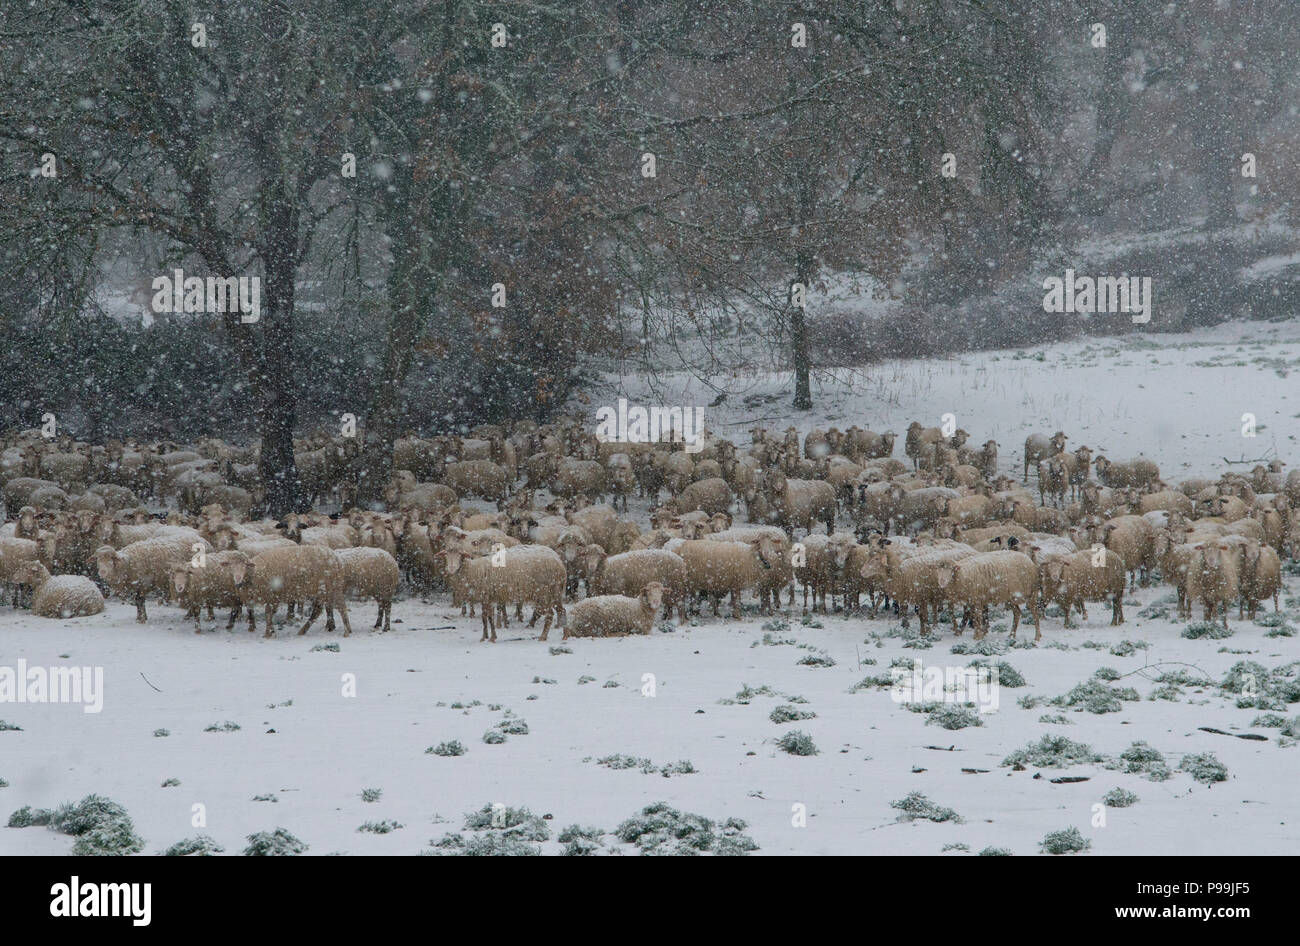 Schafe (Ovis orientalis), Herde von Schafen im Schnee mit Bäumen im Hintergrund, Mammoiada Sardinien, Italien Stockfoto